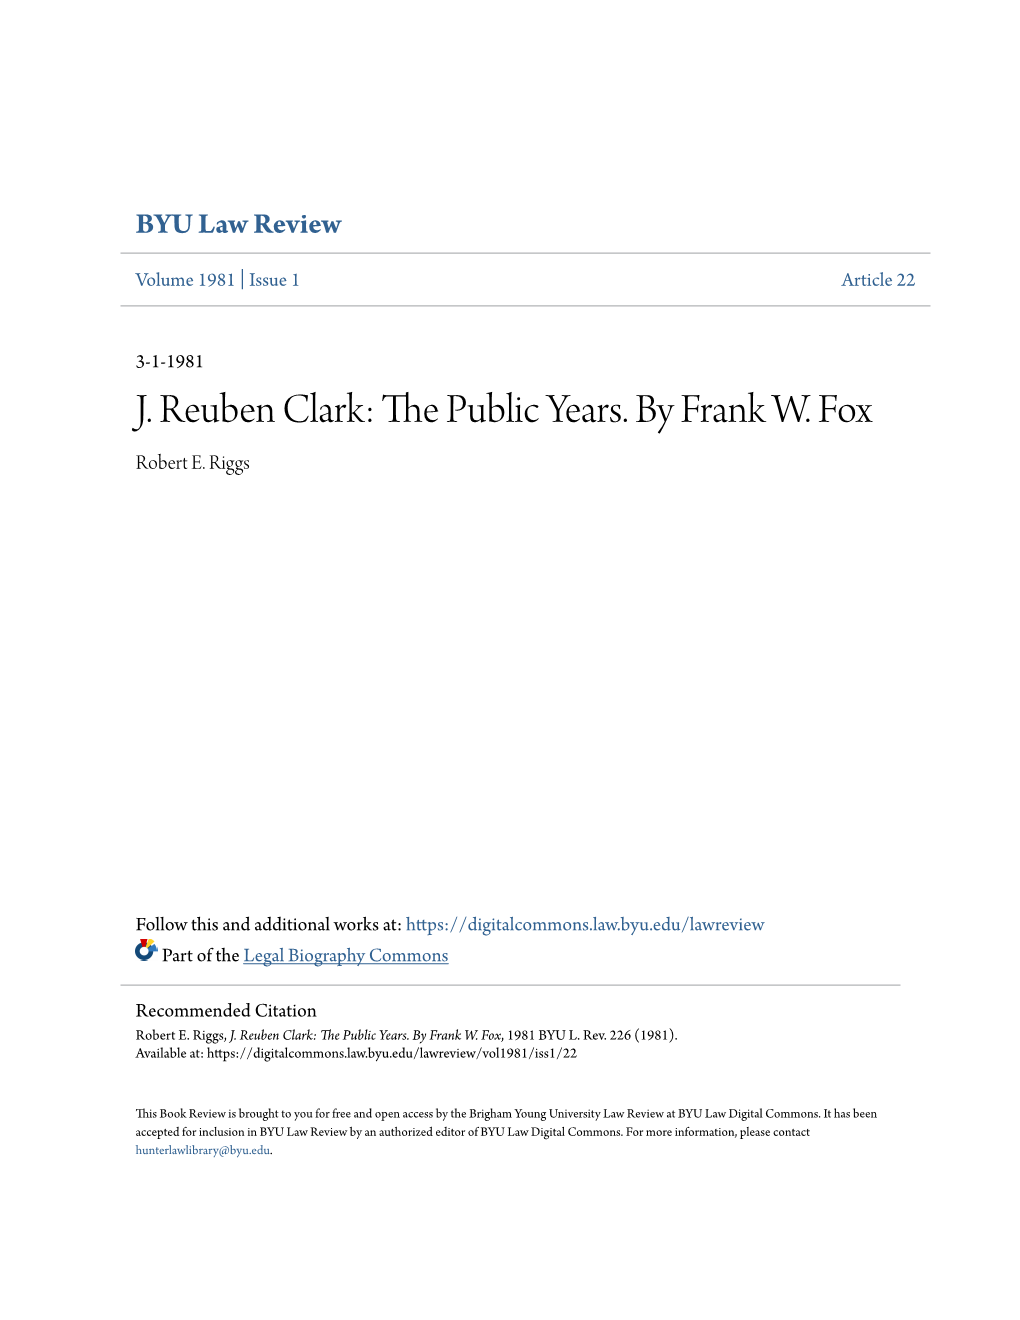 J. Reuben Clark: the Public Ey Ars